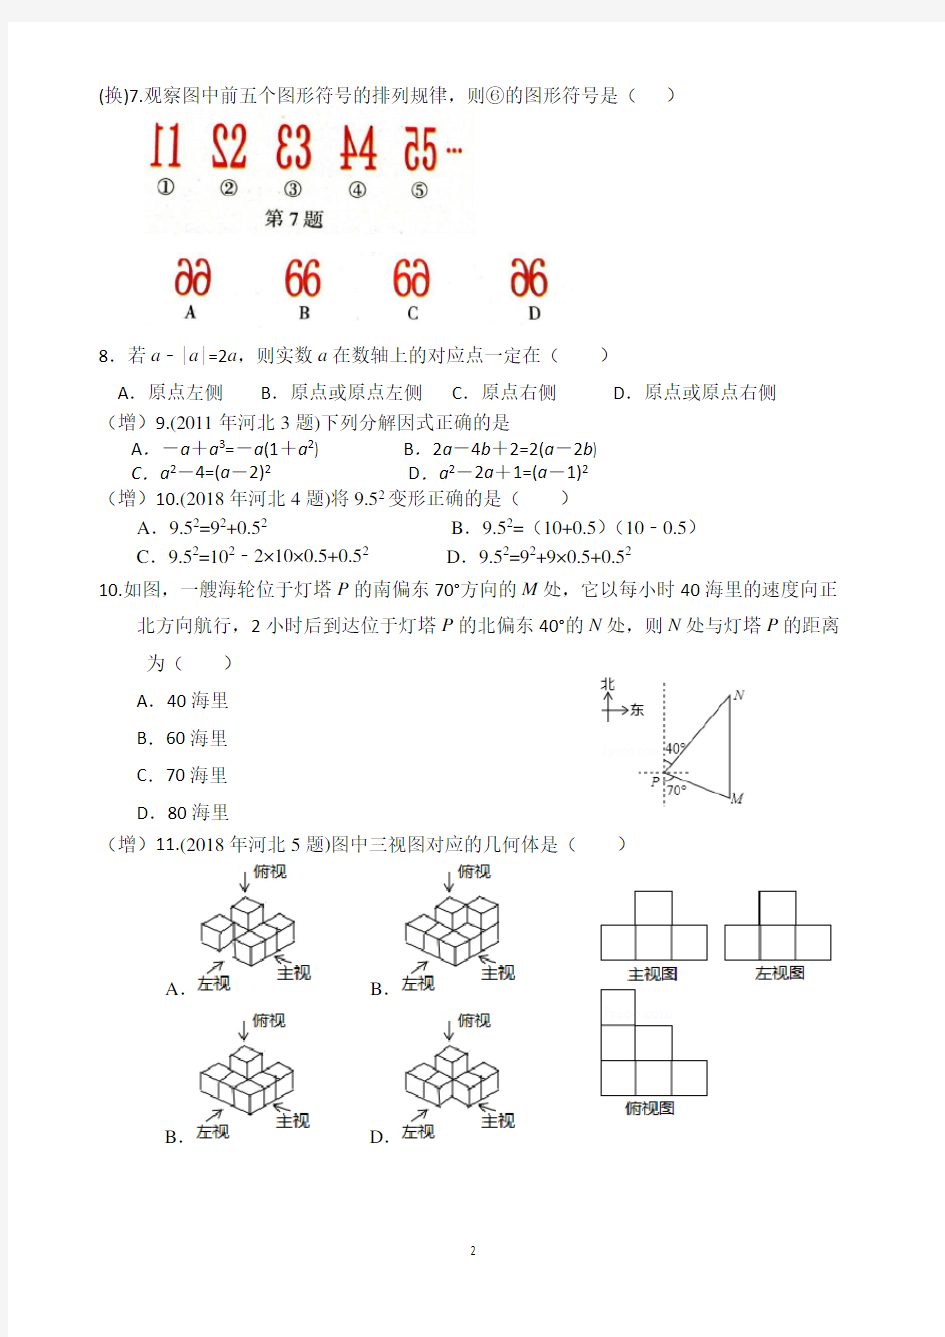 2020年河北中考文化课考试说明数学考试题型示例